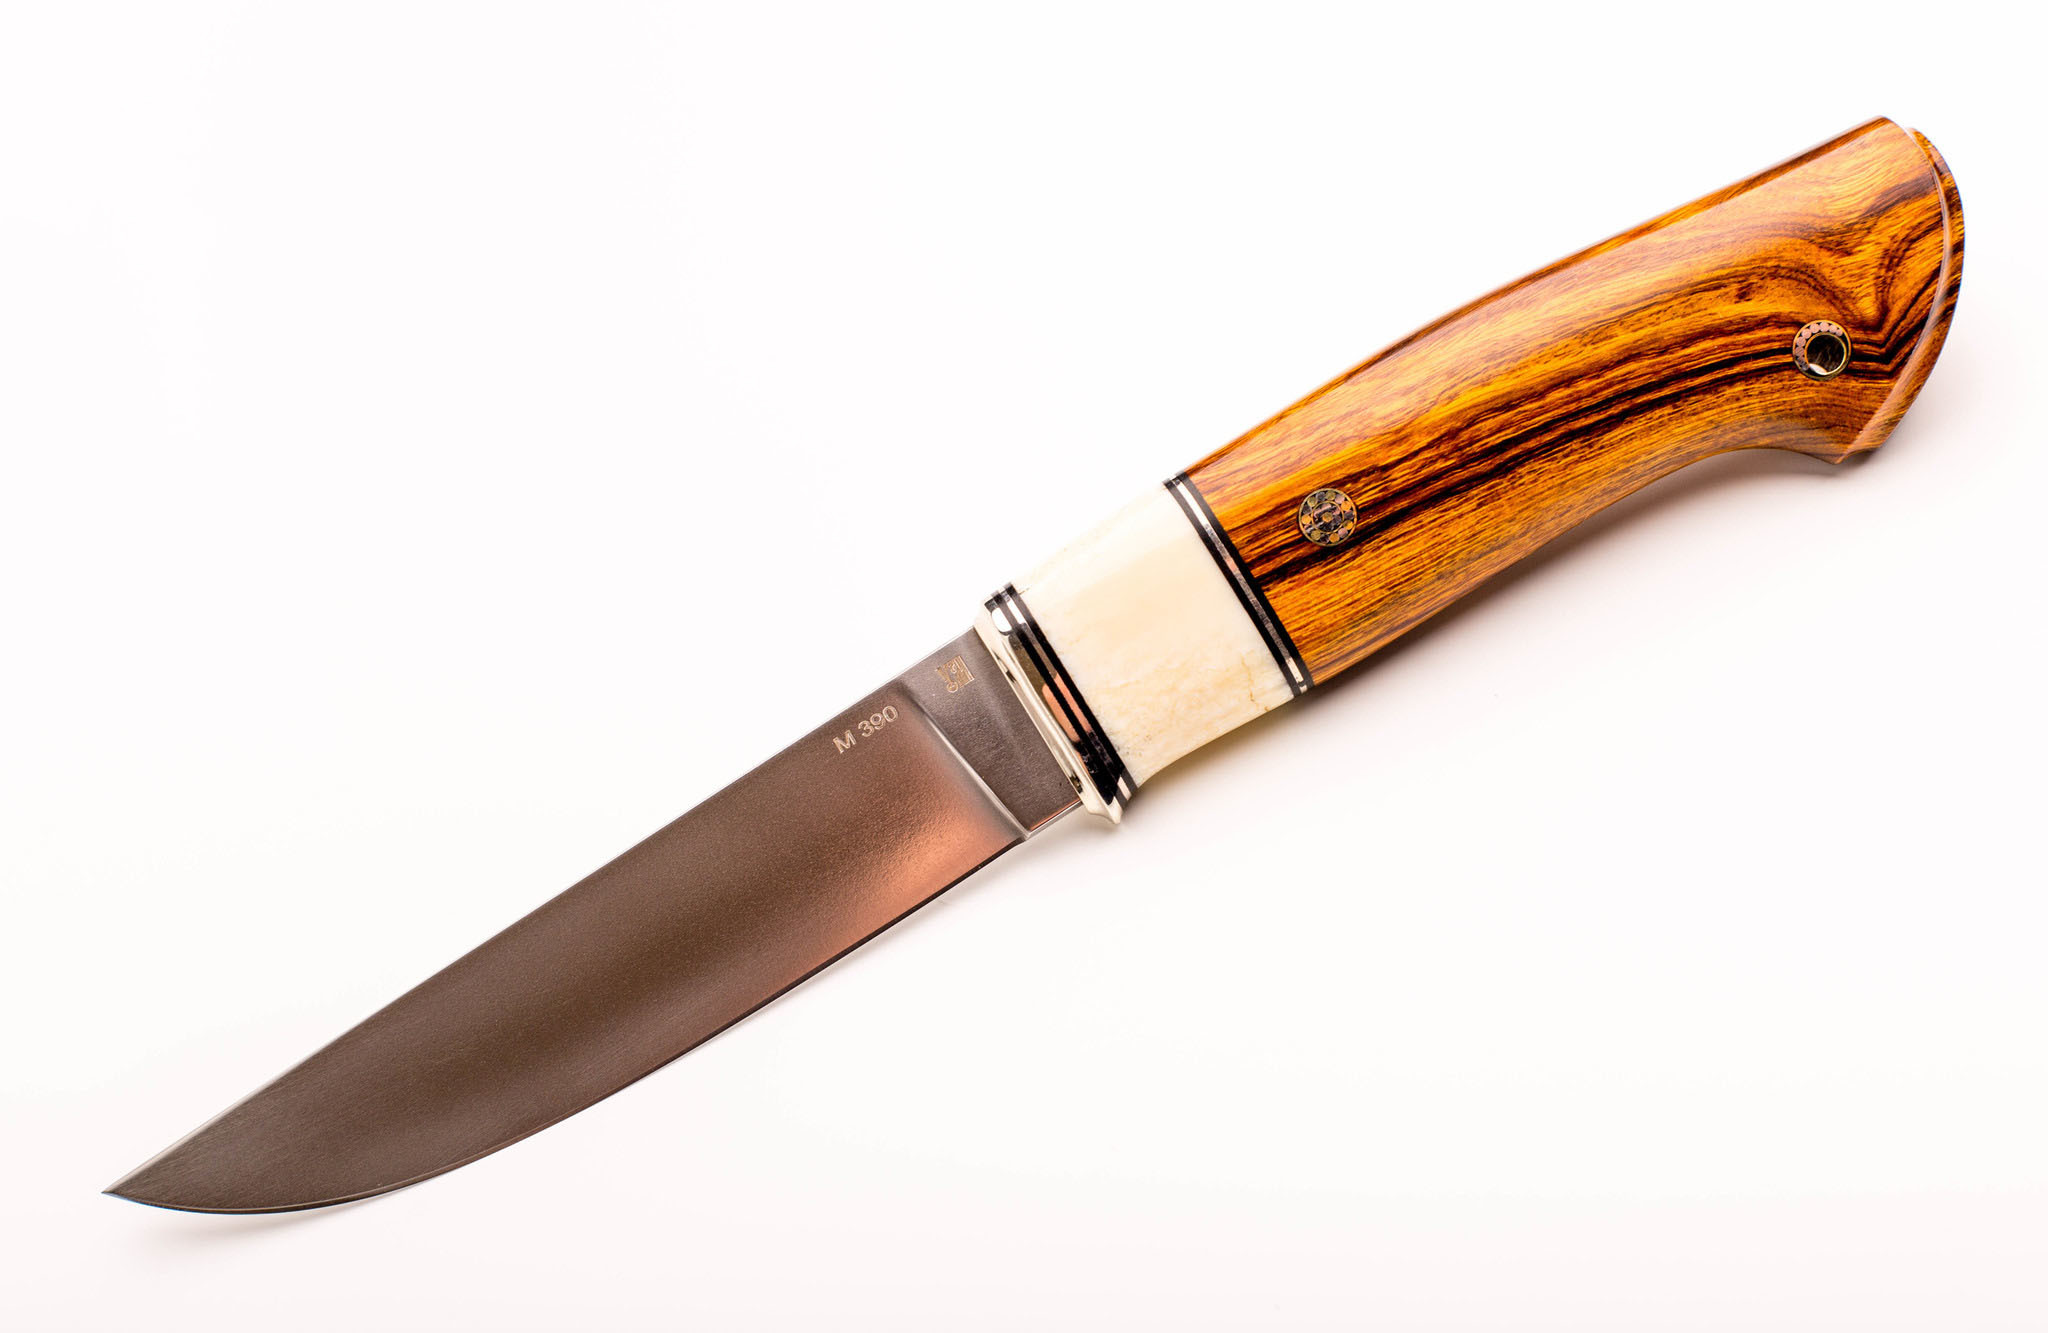 Нож Лидер 3, сталь M390, железное дерево, вставка рог лося